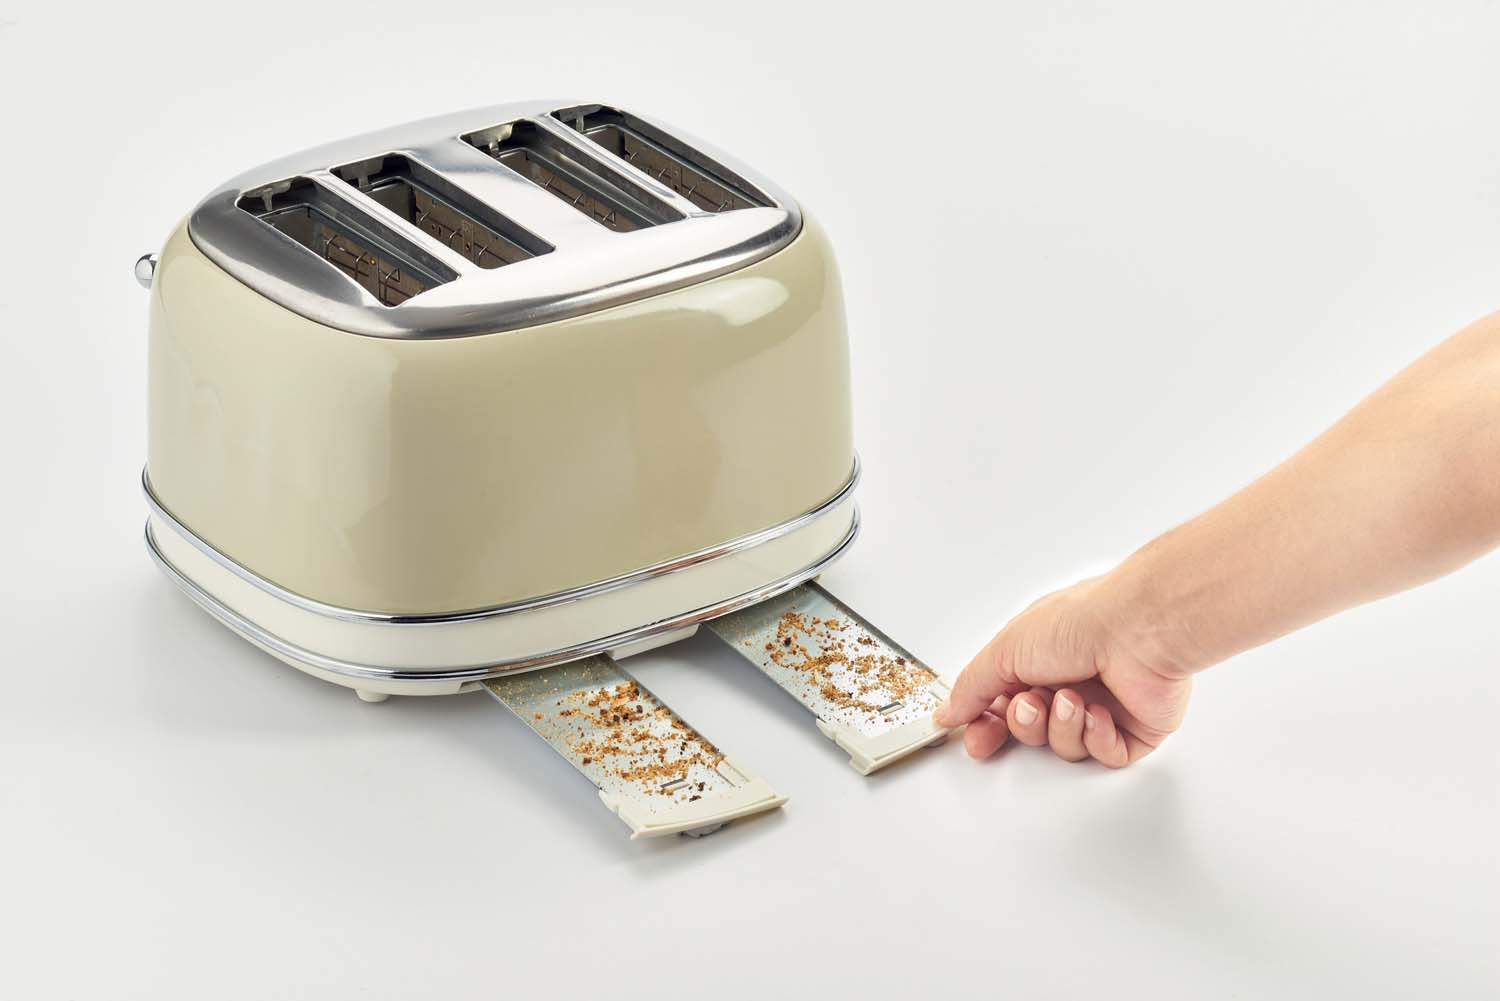 6 Toaststufen 1,7 l 2000 W 1600 W Ariete,156 Toaster im Vintage-Design für 4 Scheiben mit sichtbarem Wasserstand aus lackiertem Edelstahl /& elektrischer Design-Wasserkocher aus Edelstahl